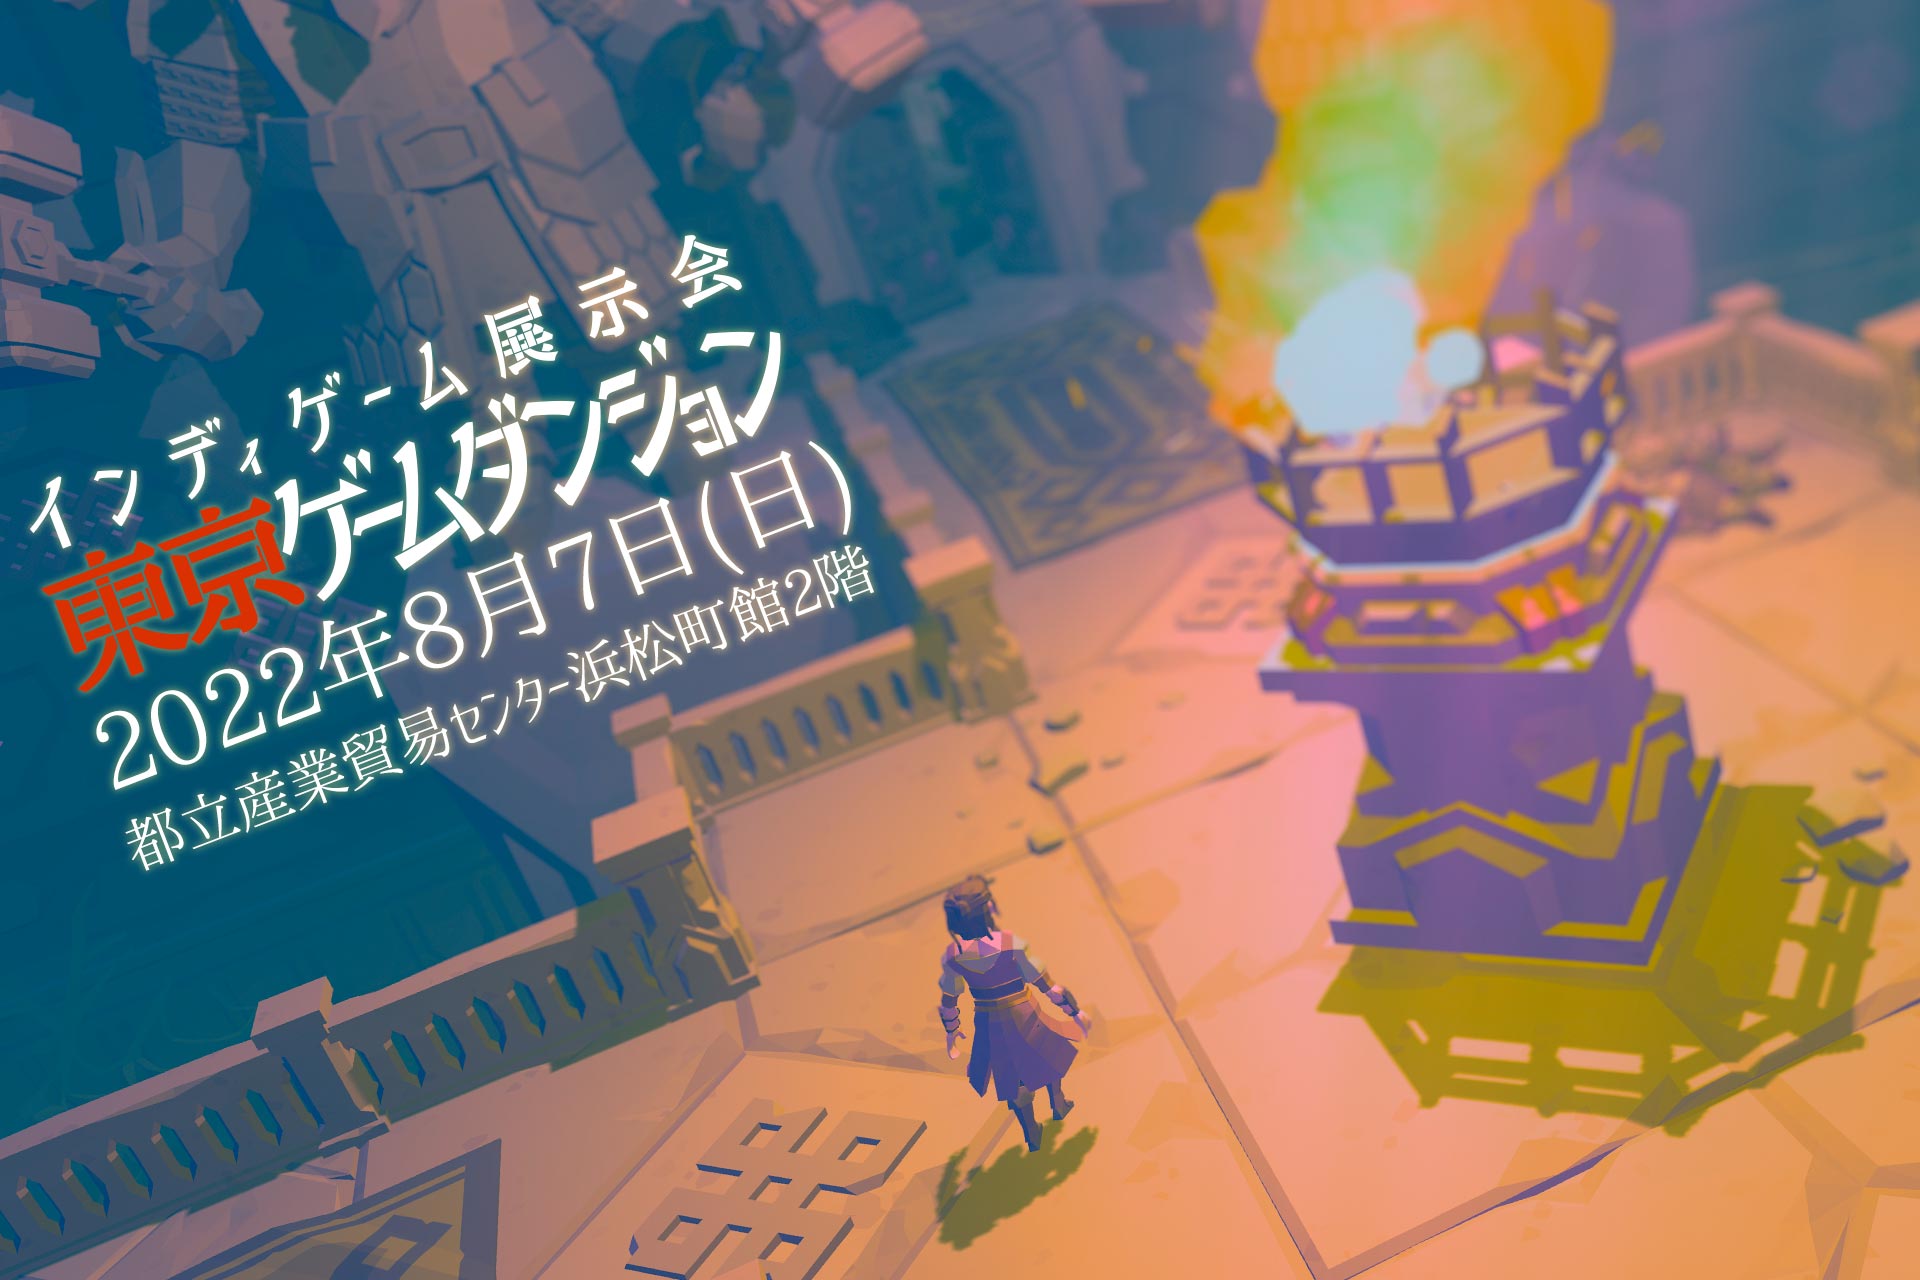 独立游戏大会《东京游戏地下城》宣布8月7日线下举行。